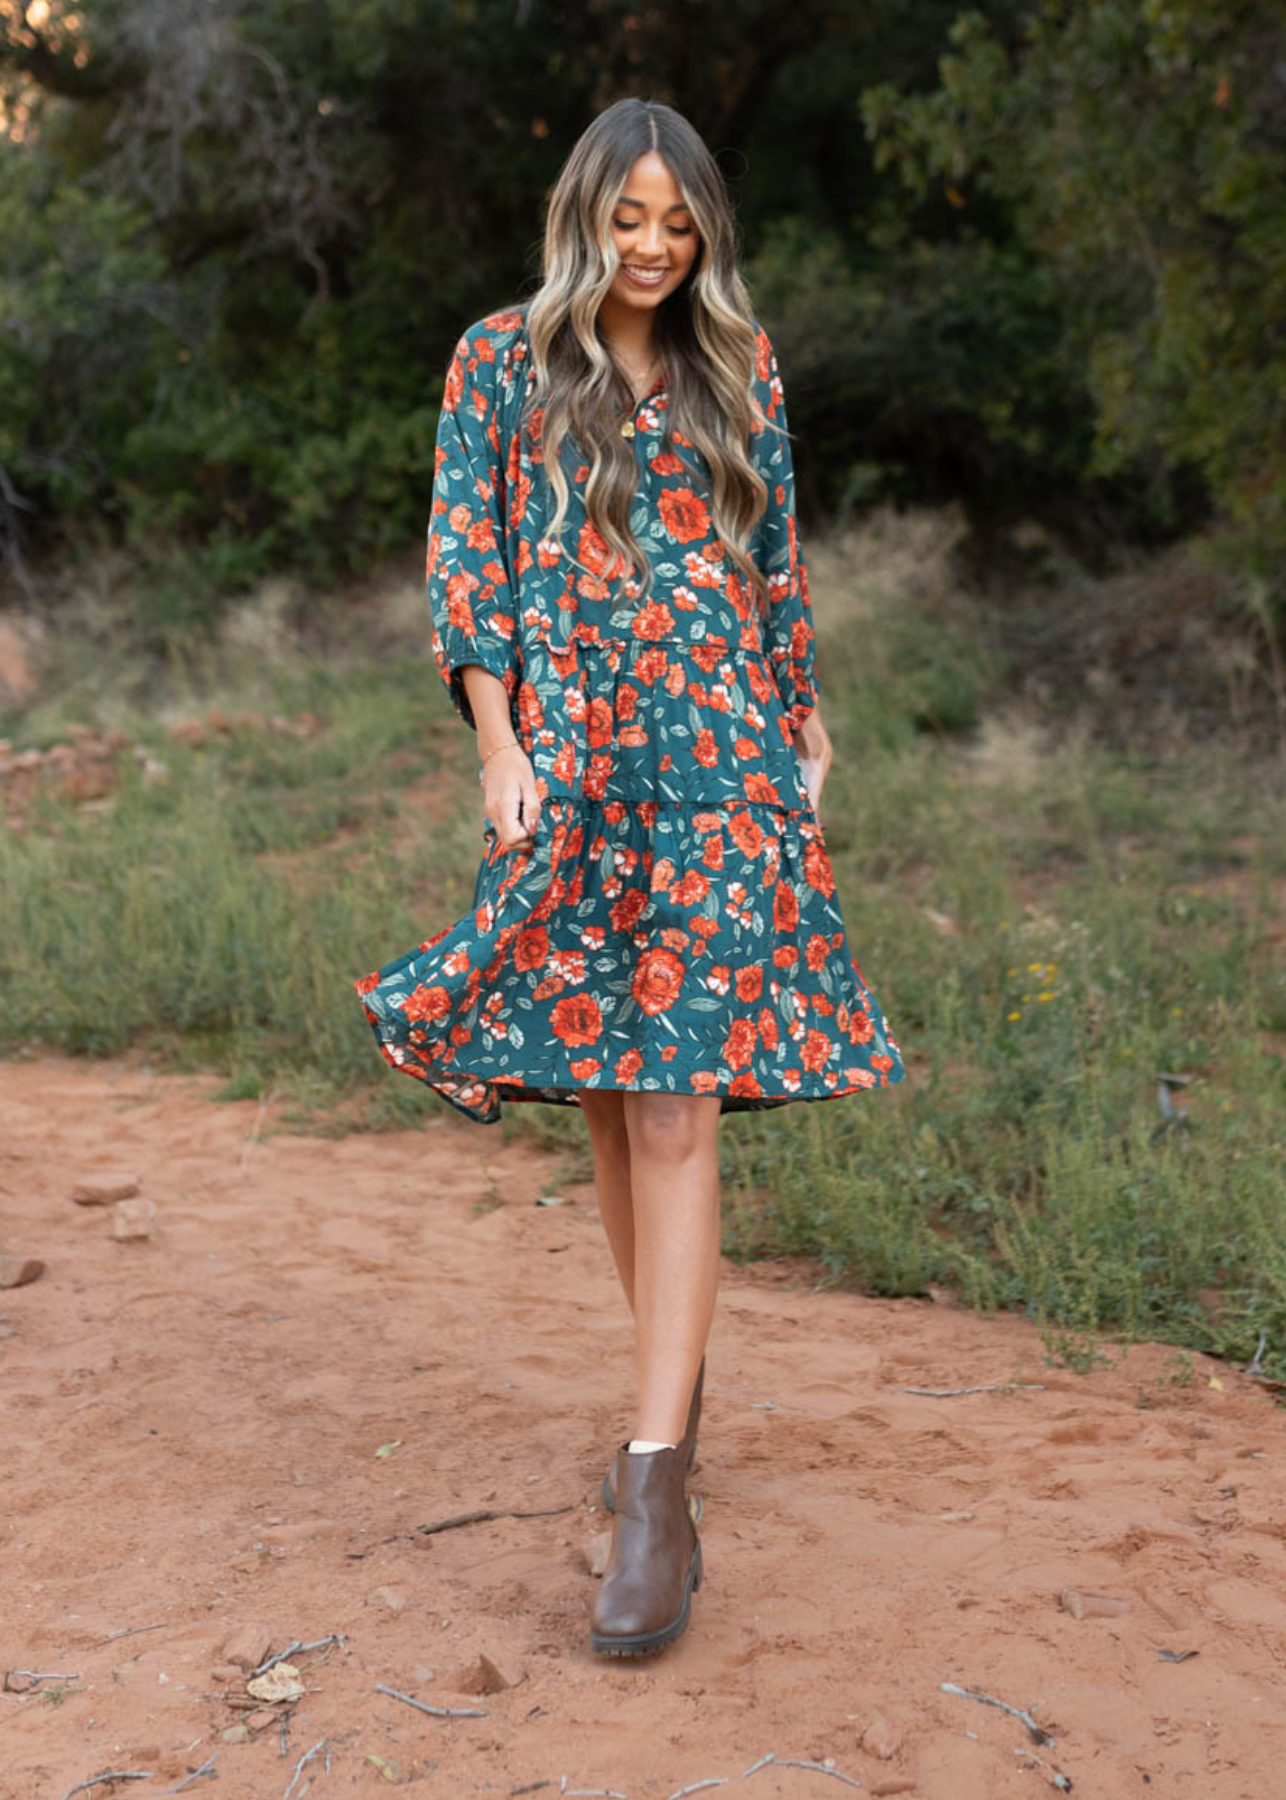 Teal floral dress